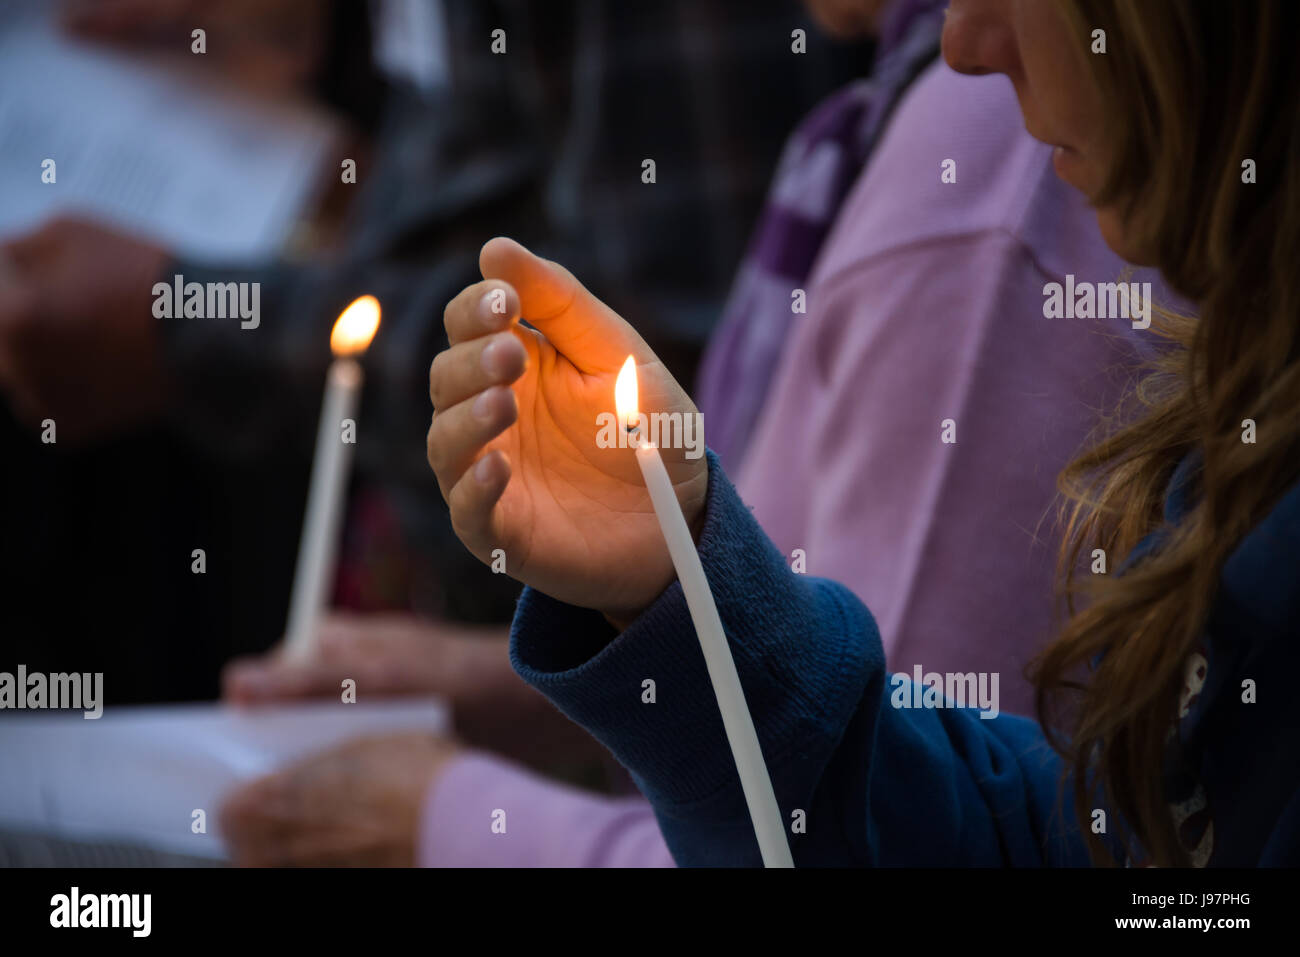 Les chrétiens palestiniens et internationaux se rassemblent à l'Église orthodoxe russe de Marie Madeleine dans le jardin de Gethsémané sur le Mont des Oliviers pour une bougie de prière Jeudi Saint, 17 avril 2014. Banque D'Images